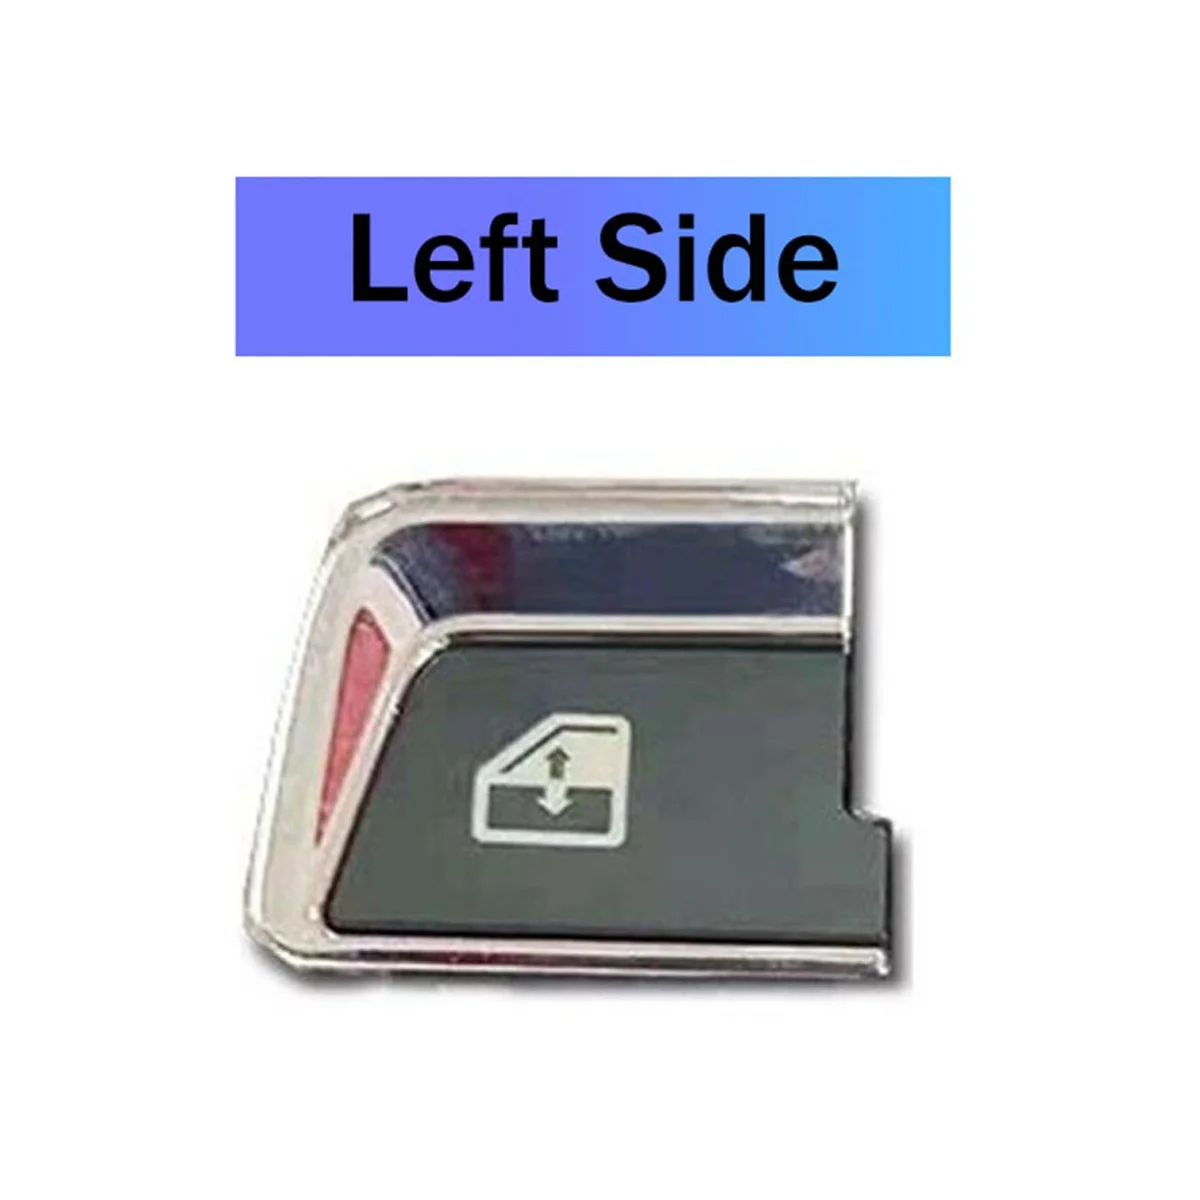 

Кнопка управления питанием и окном, переключатель для стеклоподъемника 86257300 для левой стороны Ferrari California